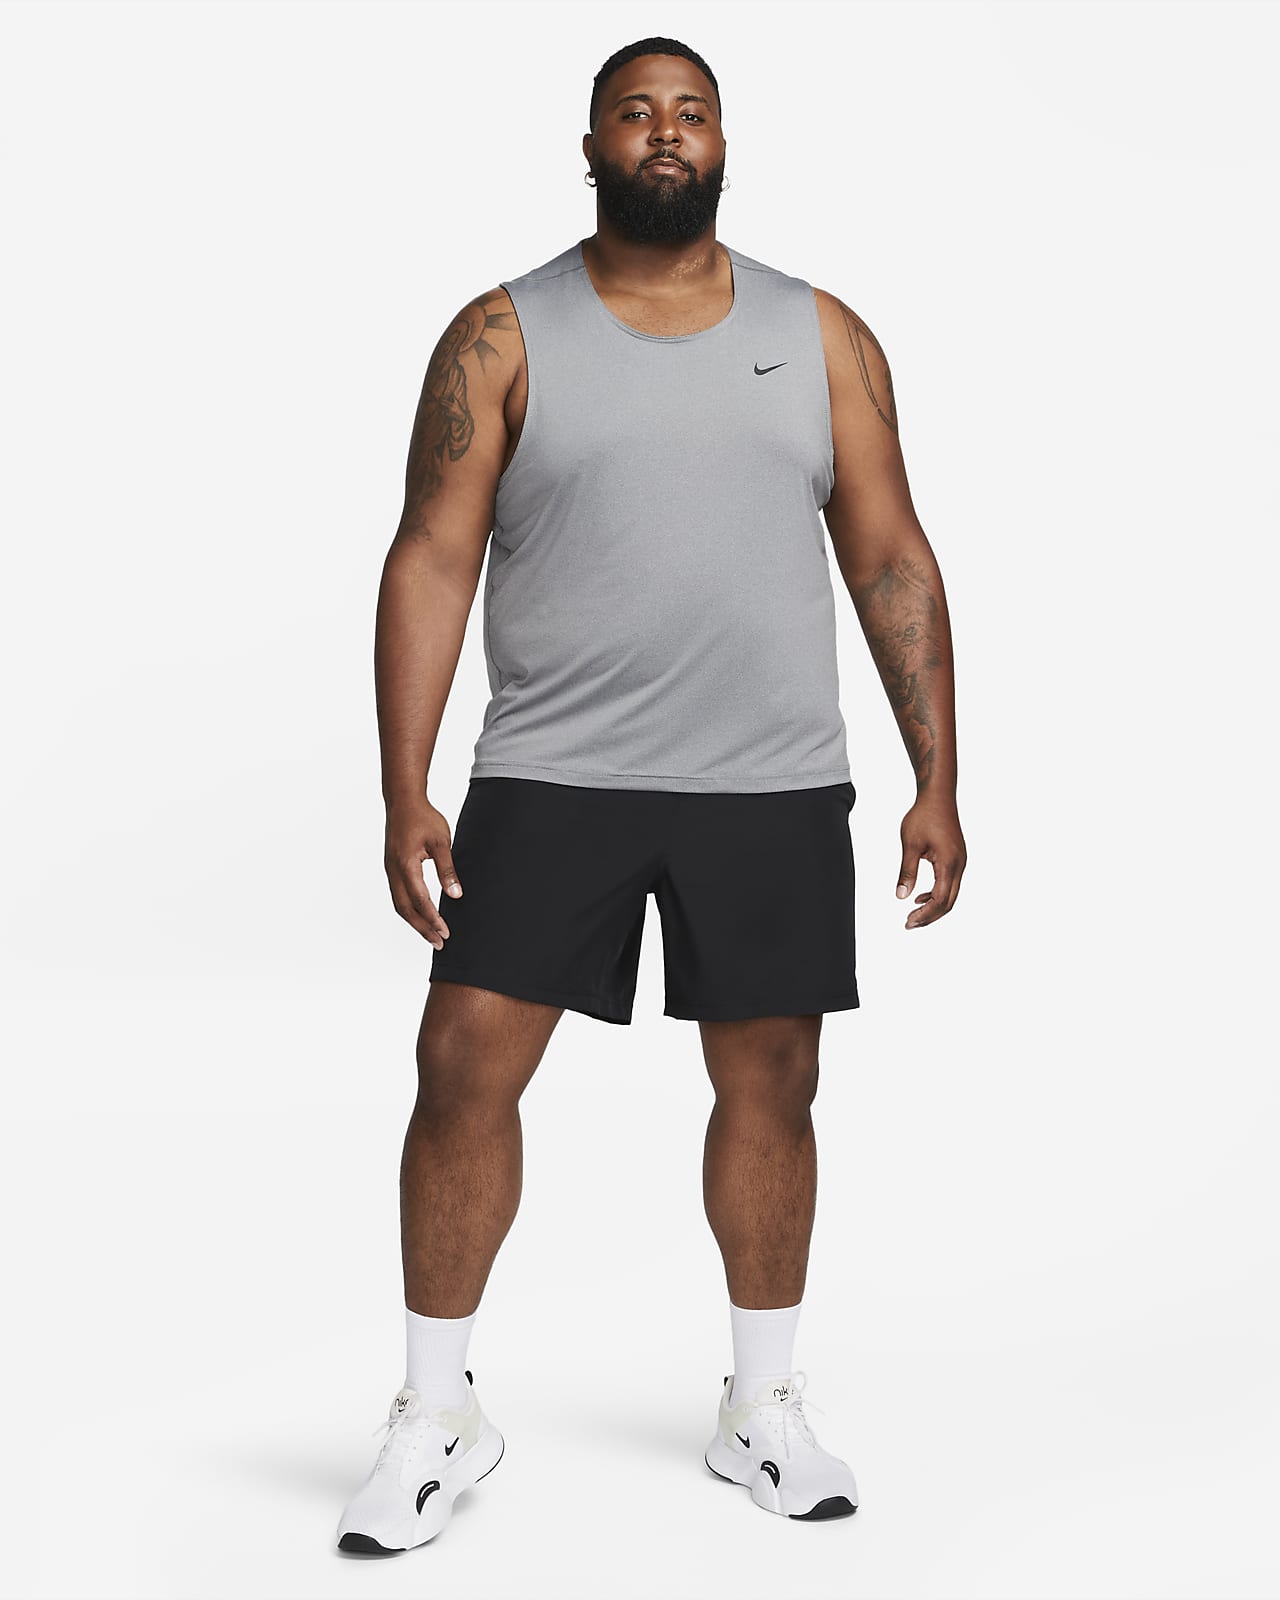 Nike Ready Dri-FIT Fitness Tank Top. Nike